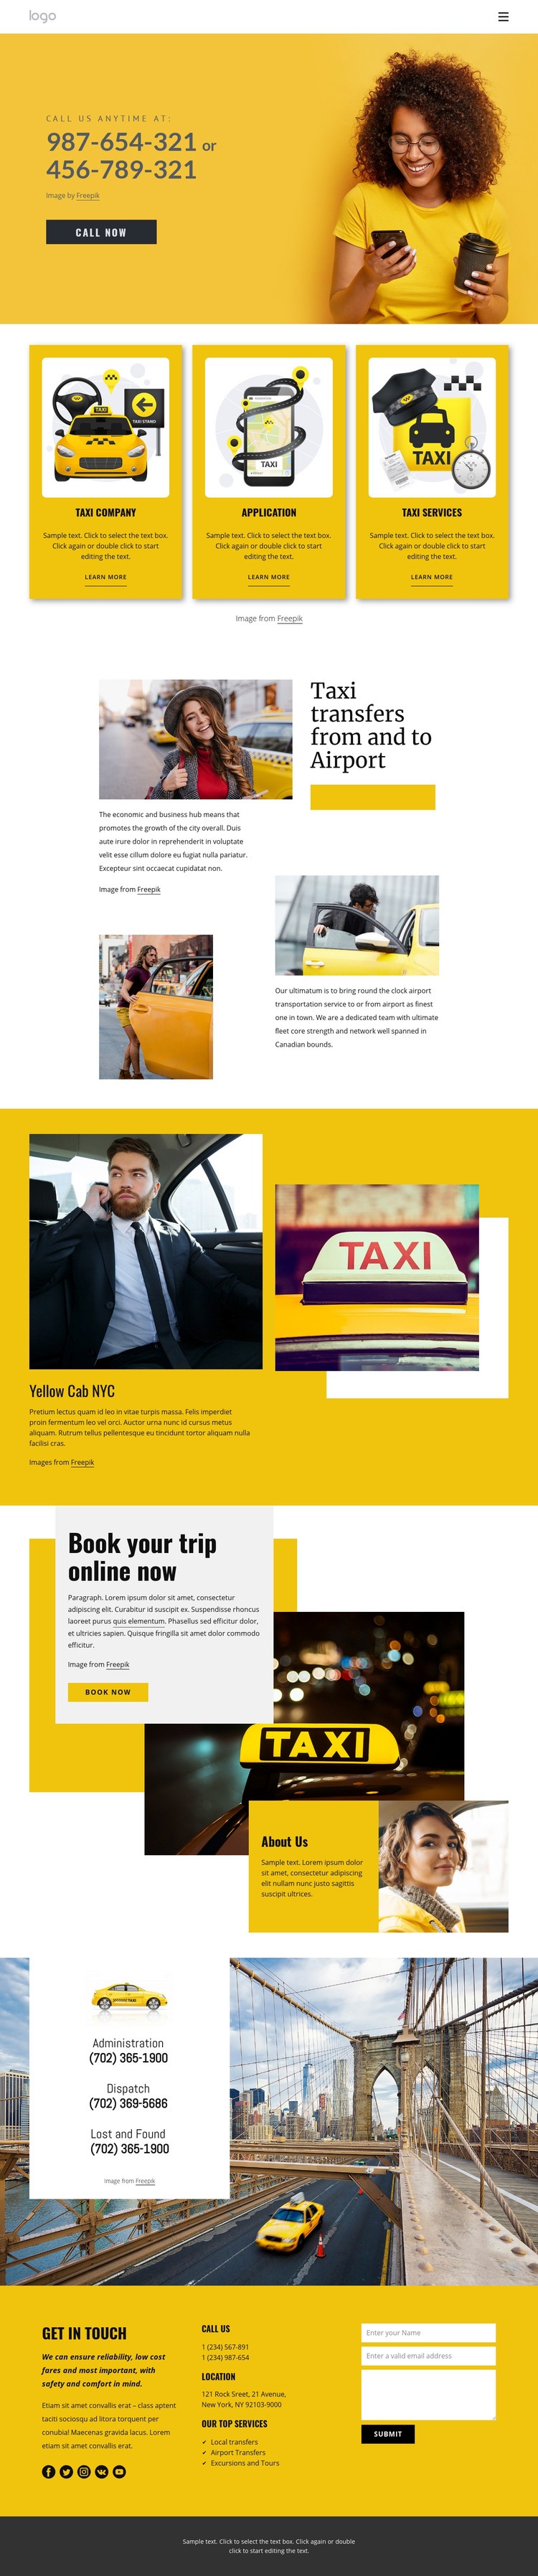 Quality taxi service Wysiwyg Editor Html 